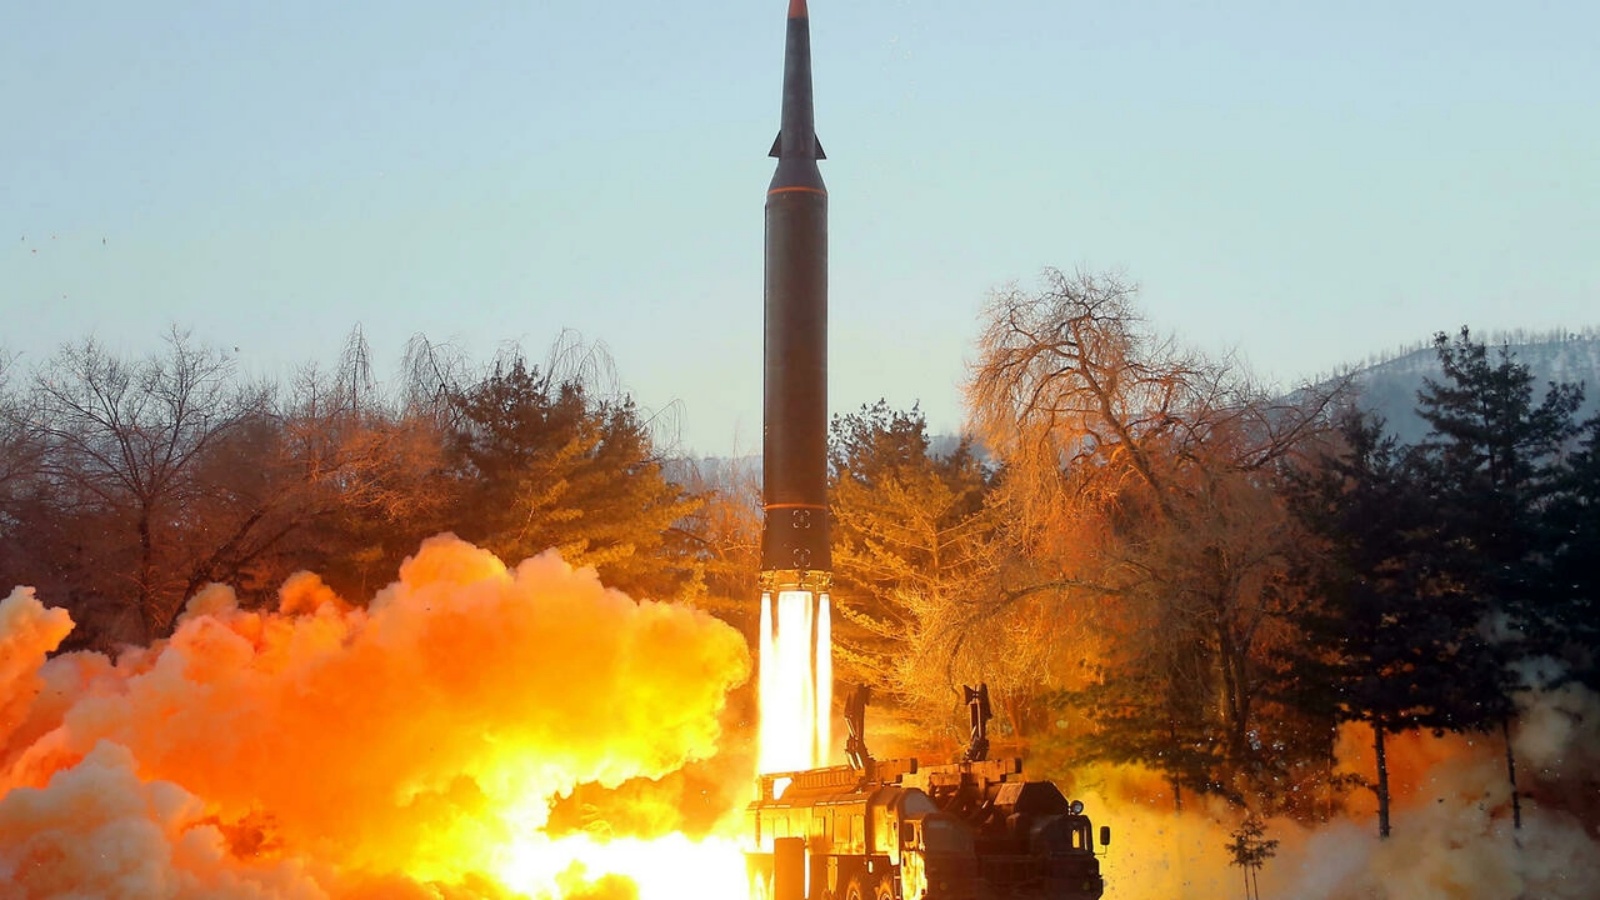 صورة نشرتها وكالة الانباء الكورية الشمالية الرسمية في 6 كانون الثاني/يناير تظهر ما وصفته بانه اطلاق صاروخ اسرع من الصوت في 5 من الشهر من مكان غير معروف في كوريا الشمالية.